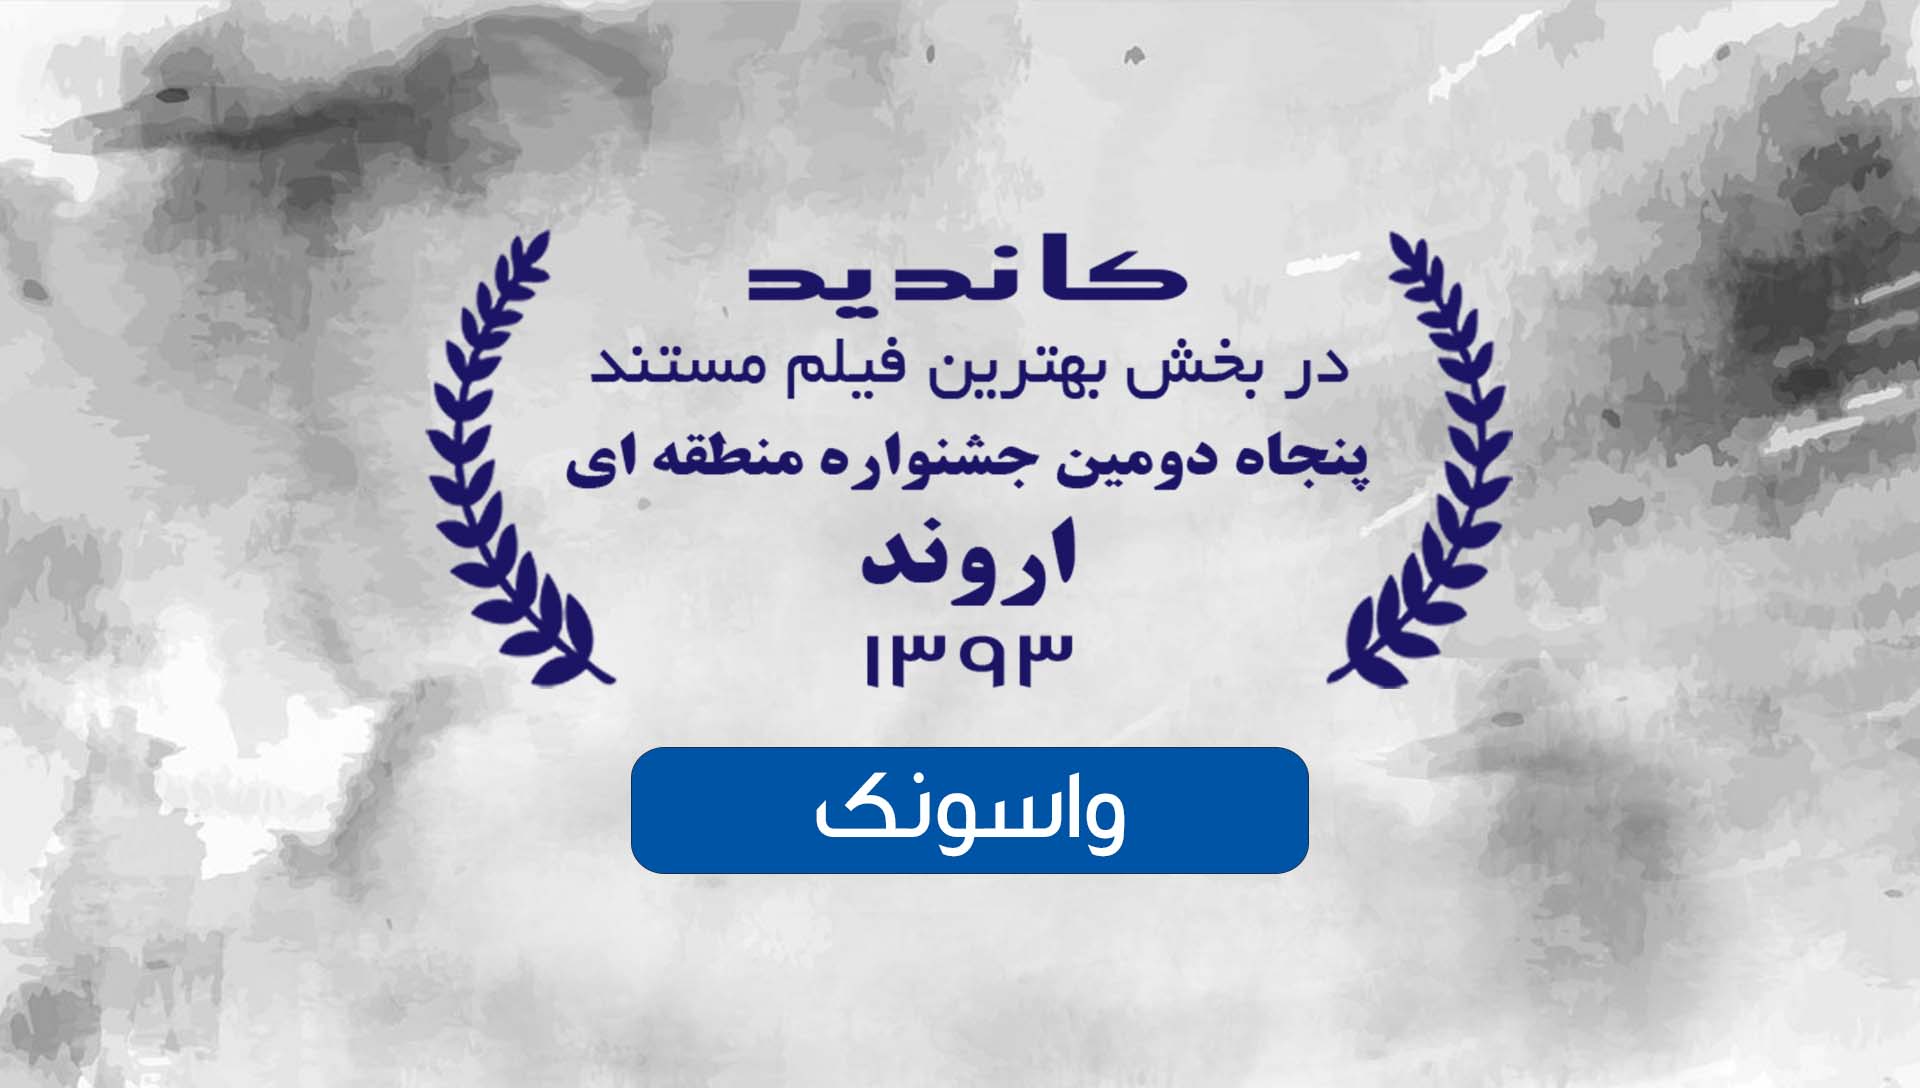 جشنواره فیلم کوتاه اروند 93 - شرکت فیلم سازی زوم شیراز برادران شریفی